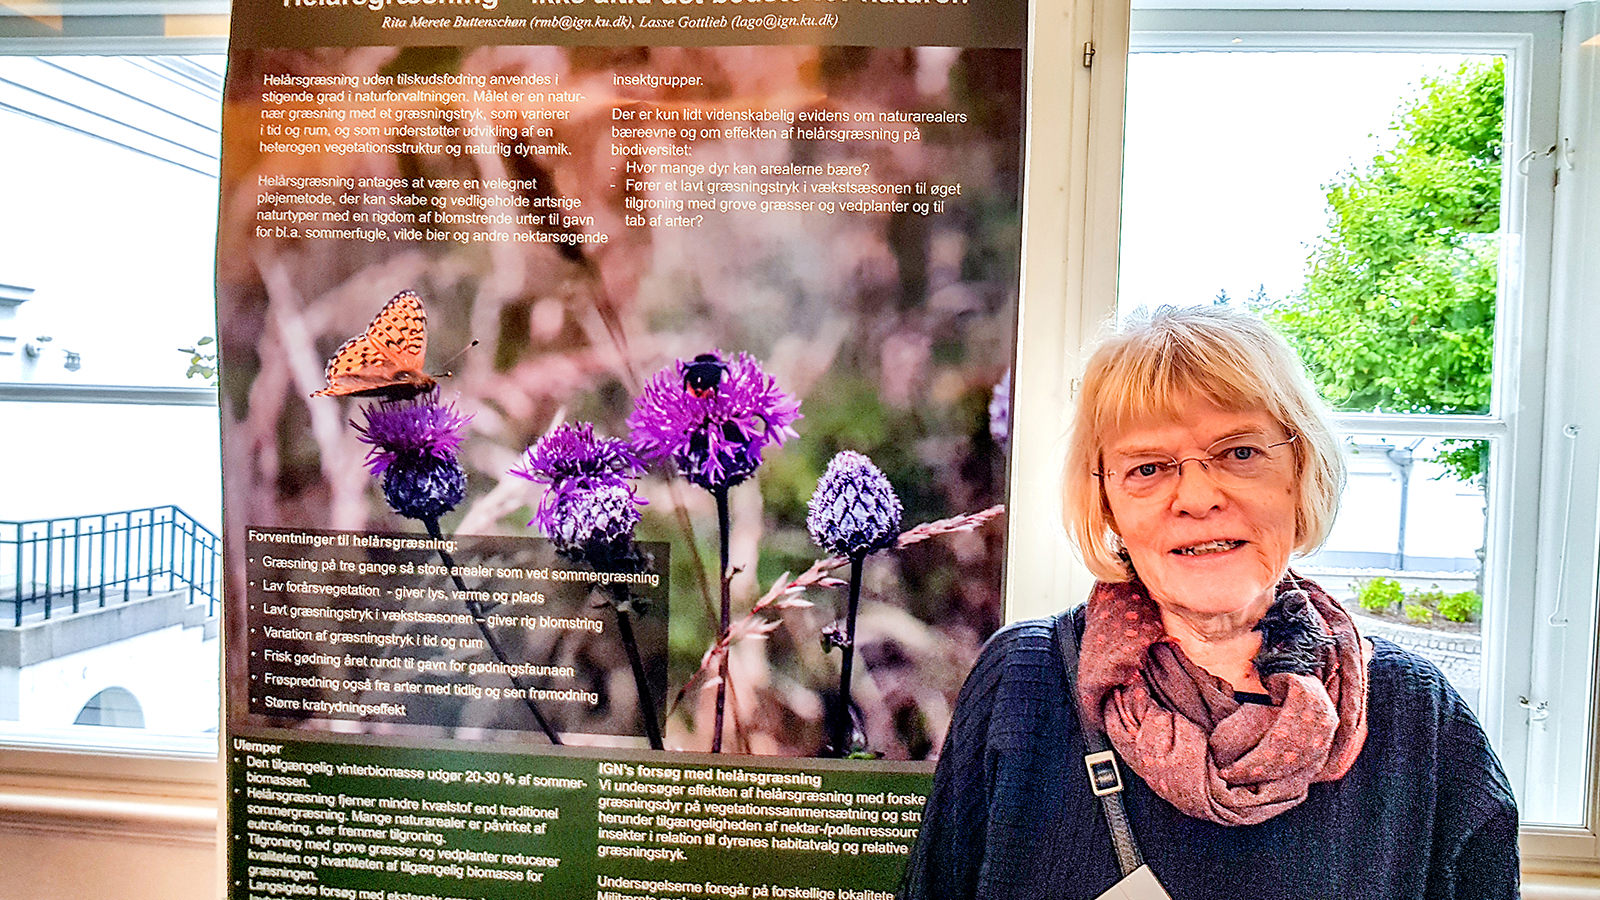 Rita Buttenschøn, seniorrådgiver ved KU, mødte op på konferencen med en poster, der fortalte, at helårsgræsning ikke altid er det bedste for naturen. I stedet anbefaler hun, at naturen med års mellemrum afbrændes af hensyn til biodiversiteten